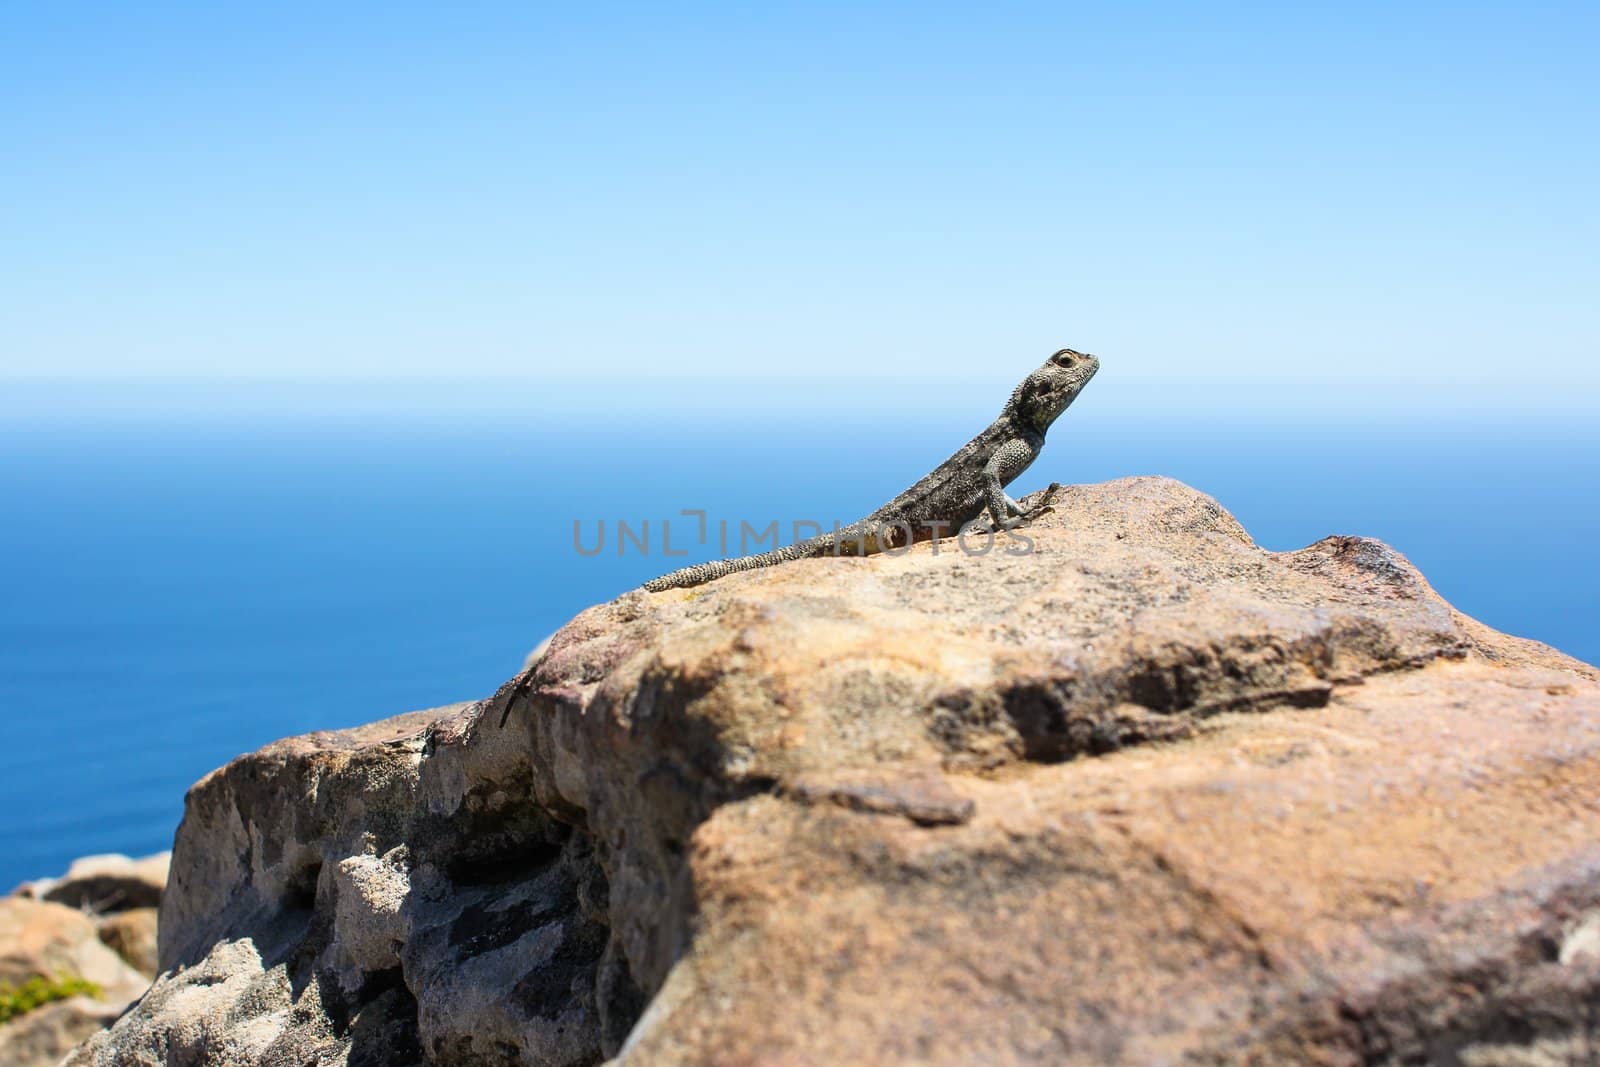 Gecko on a Rock by dwaschnig_photo